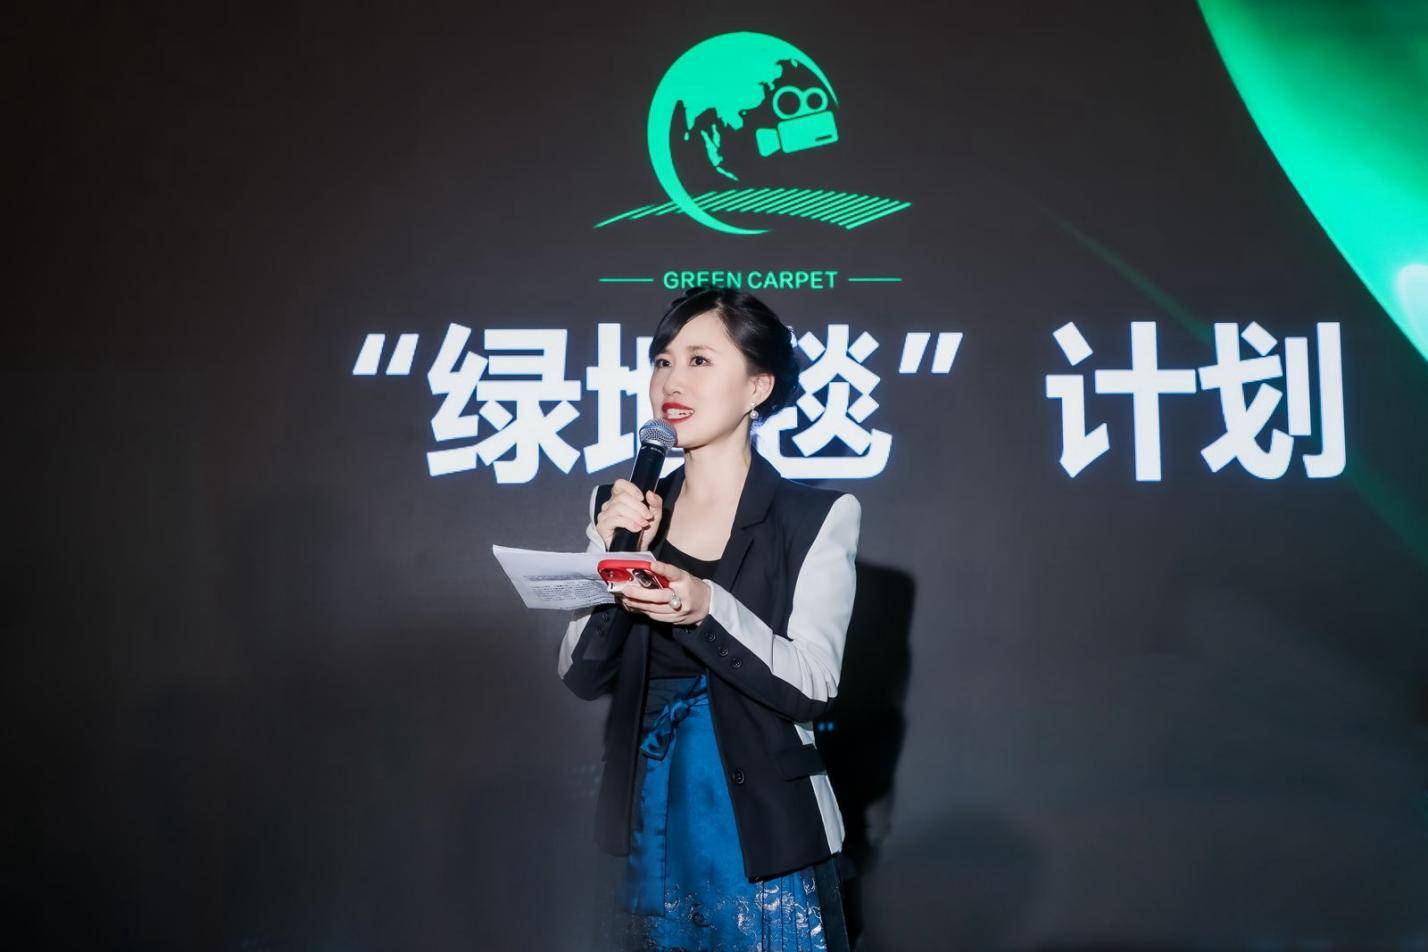 绿地毯计划亮相北京国际电影节